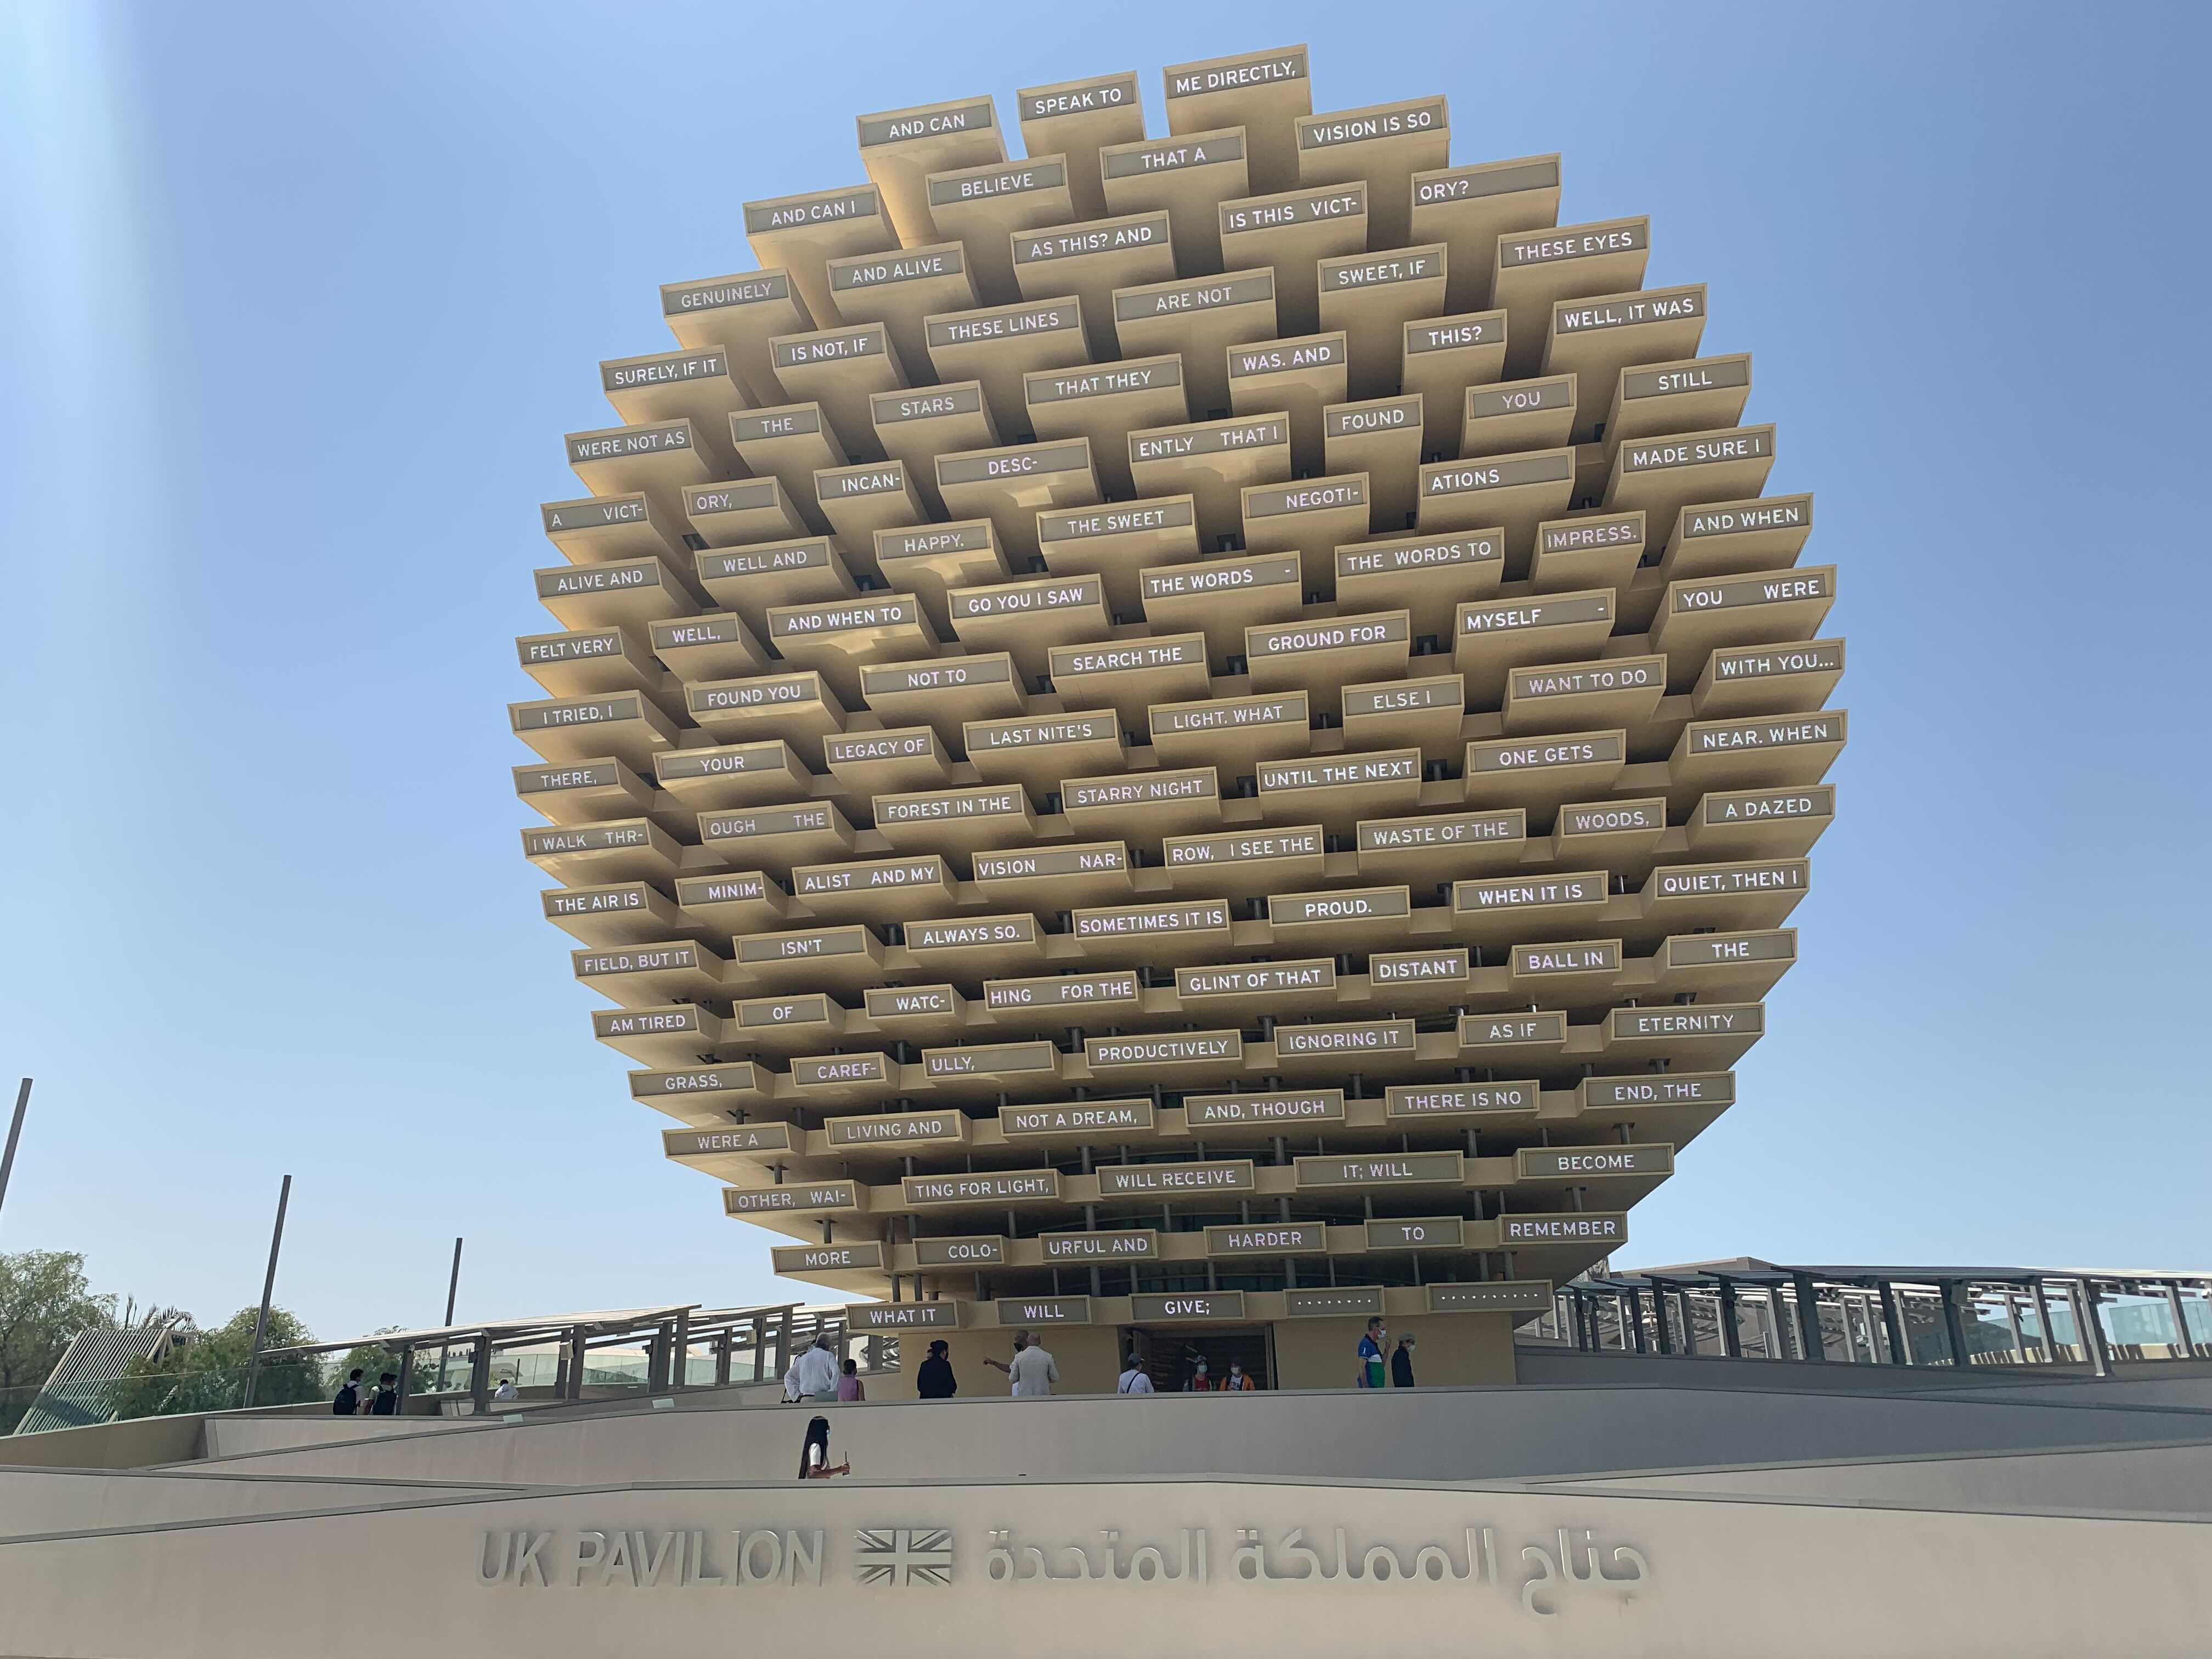 UK Pavilion designed by Es Devlin launched at Expo 2020 Dubai